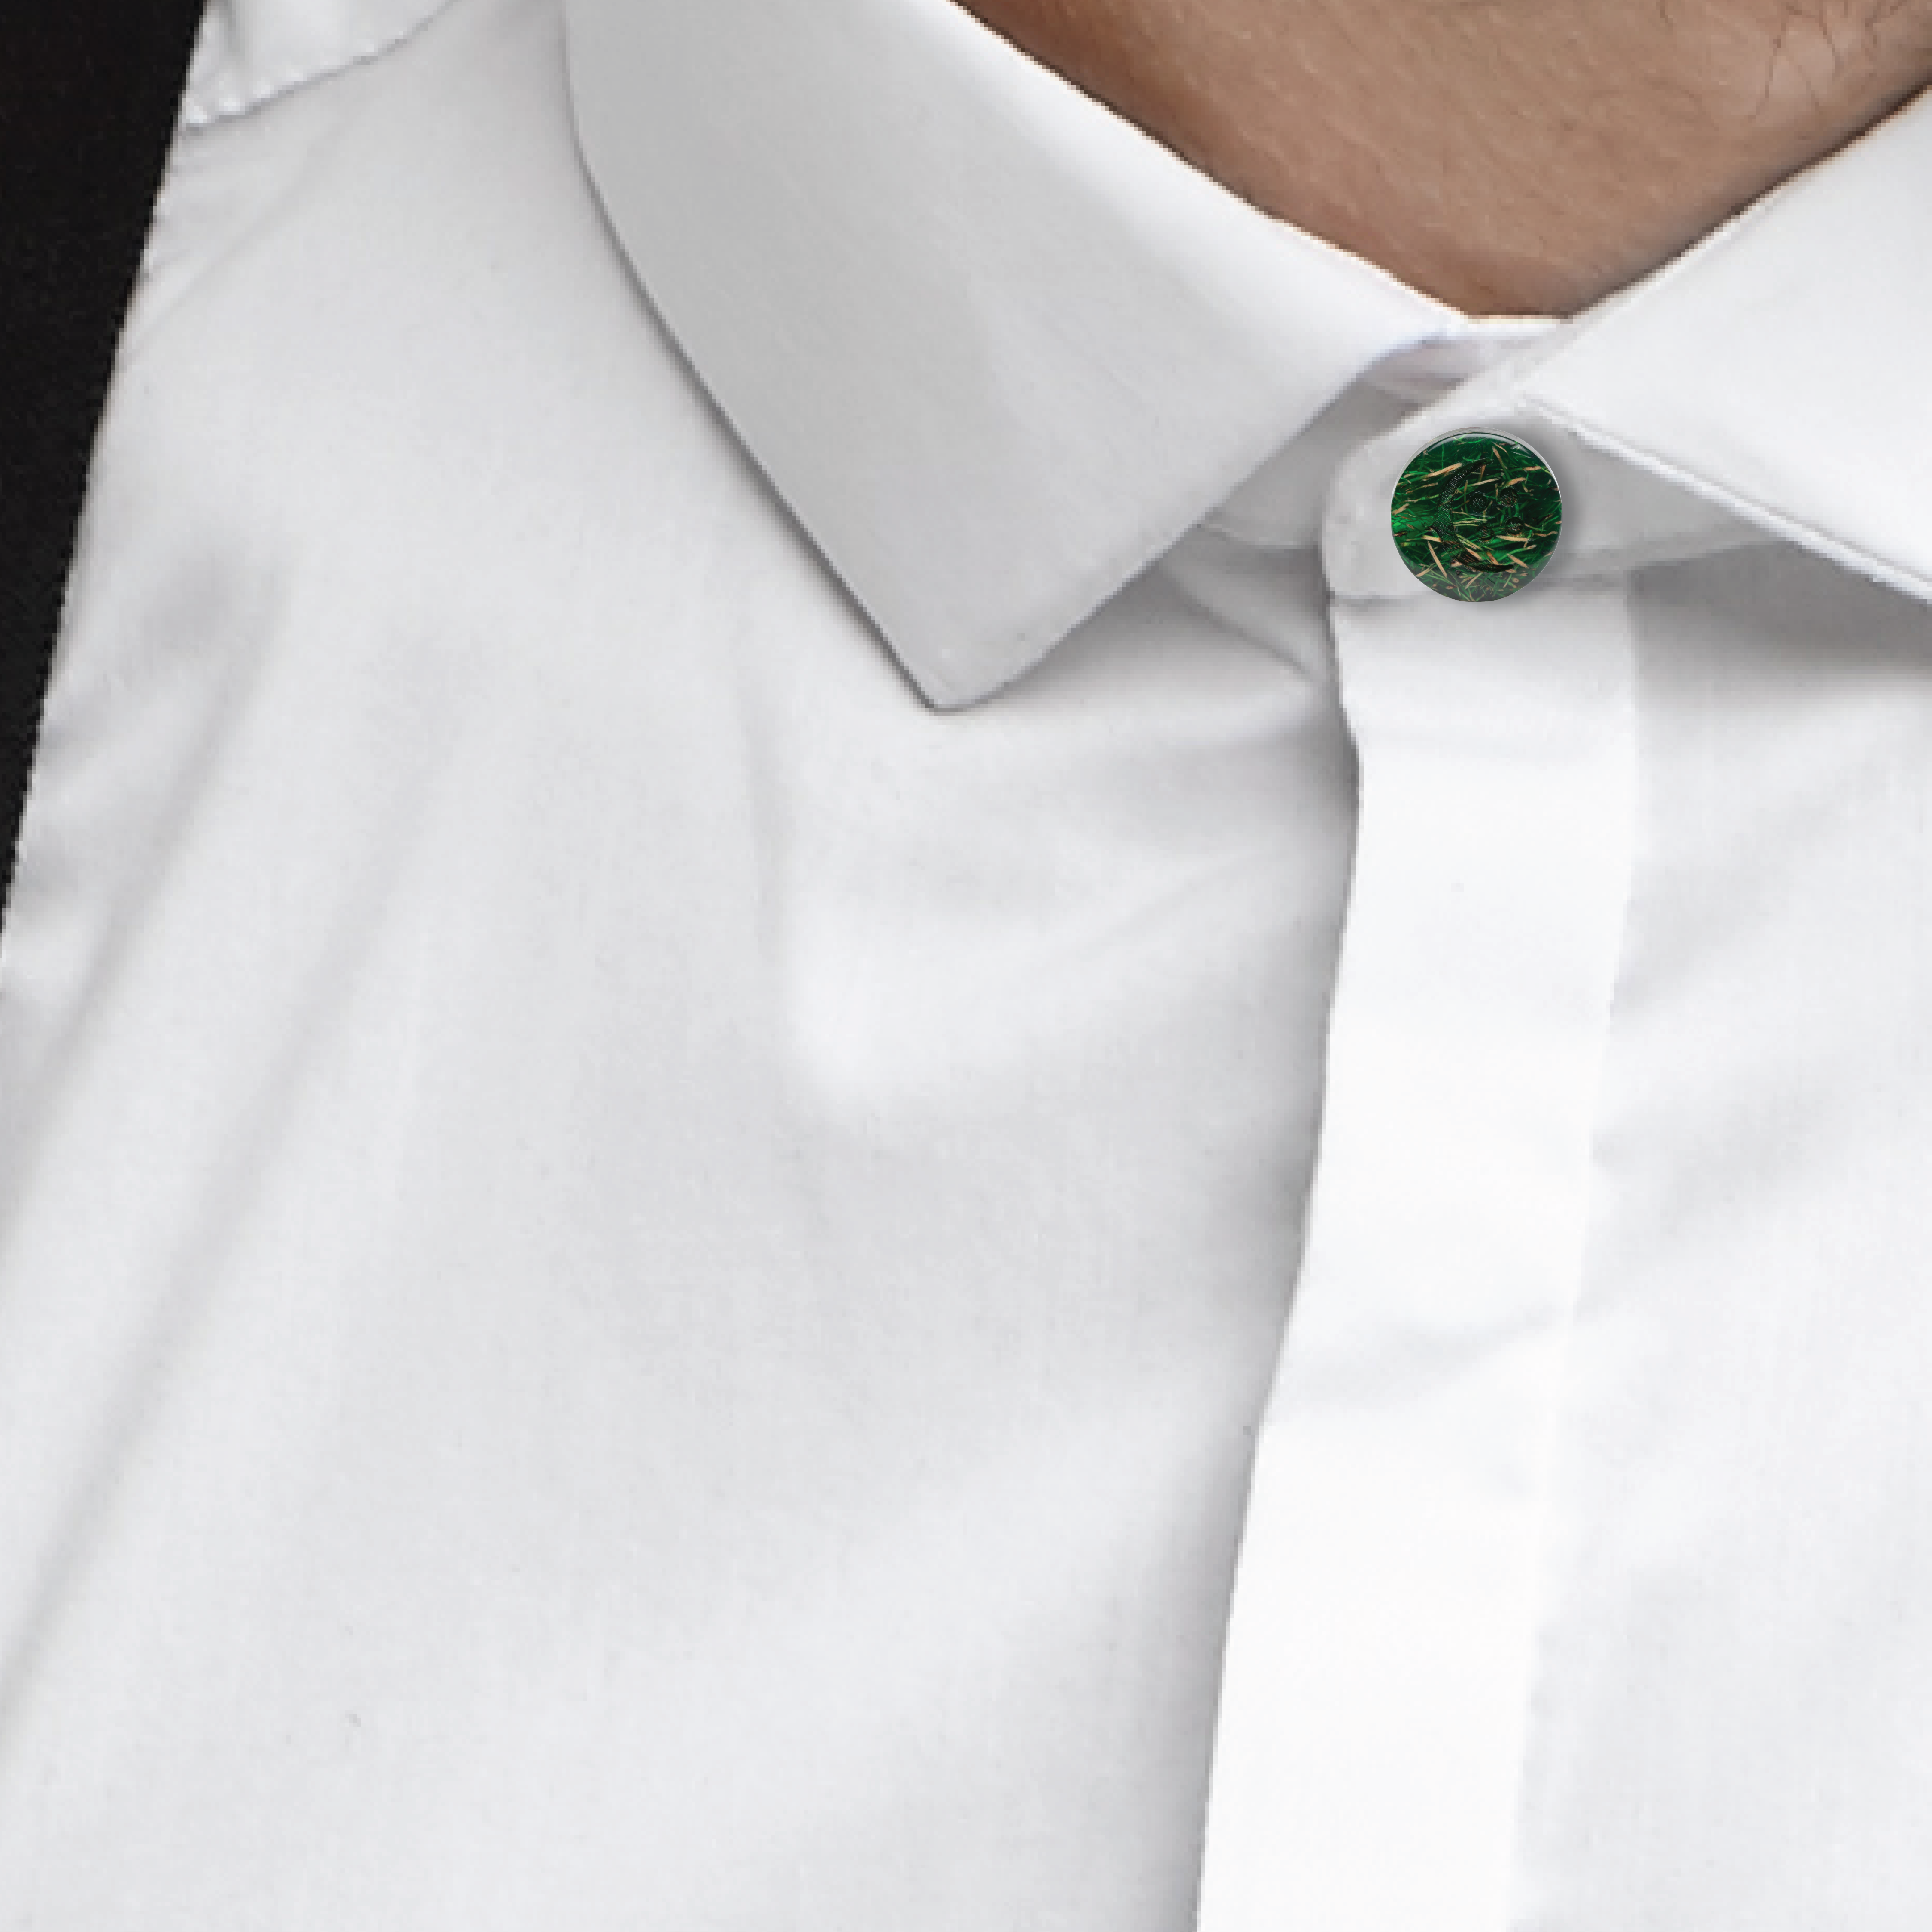 COCHIC Collar Extenders for Mens Shirts - Button Extender - Dress